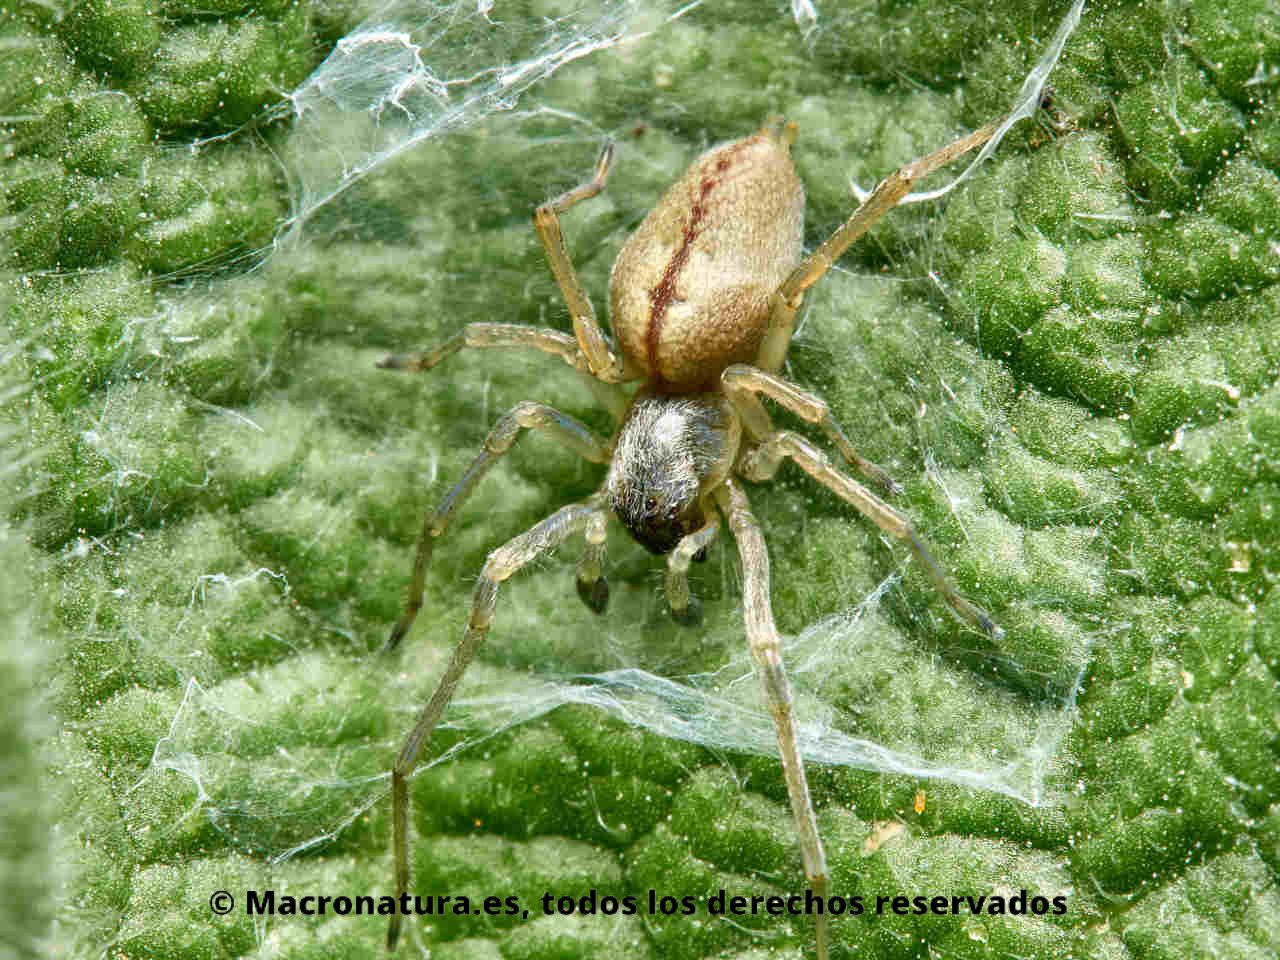 Arañas del género Cheiracanthium sobre una hoja en su estructura de seda